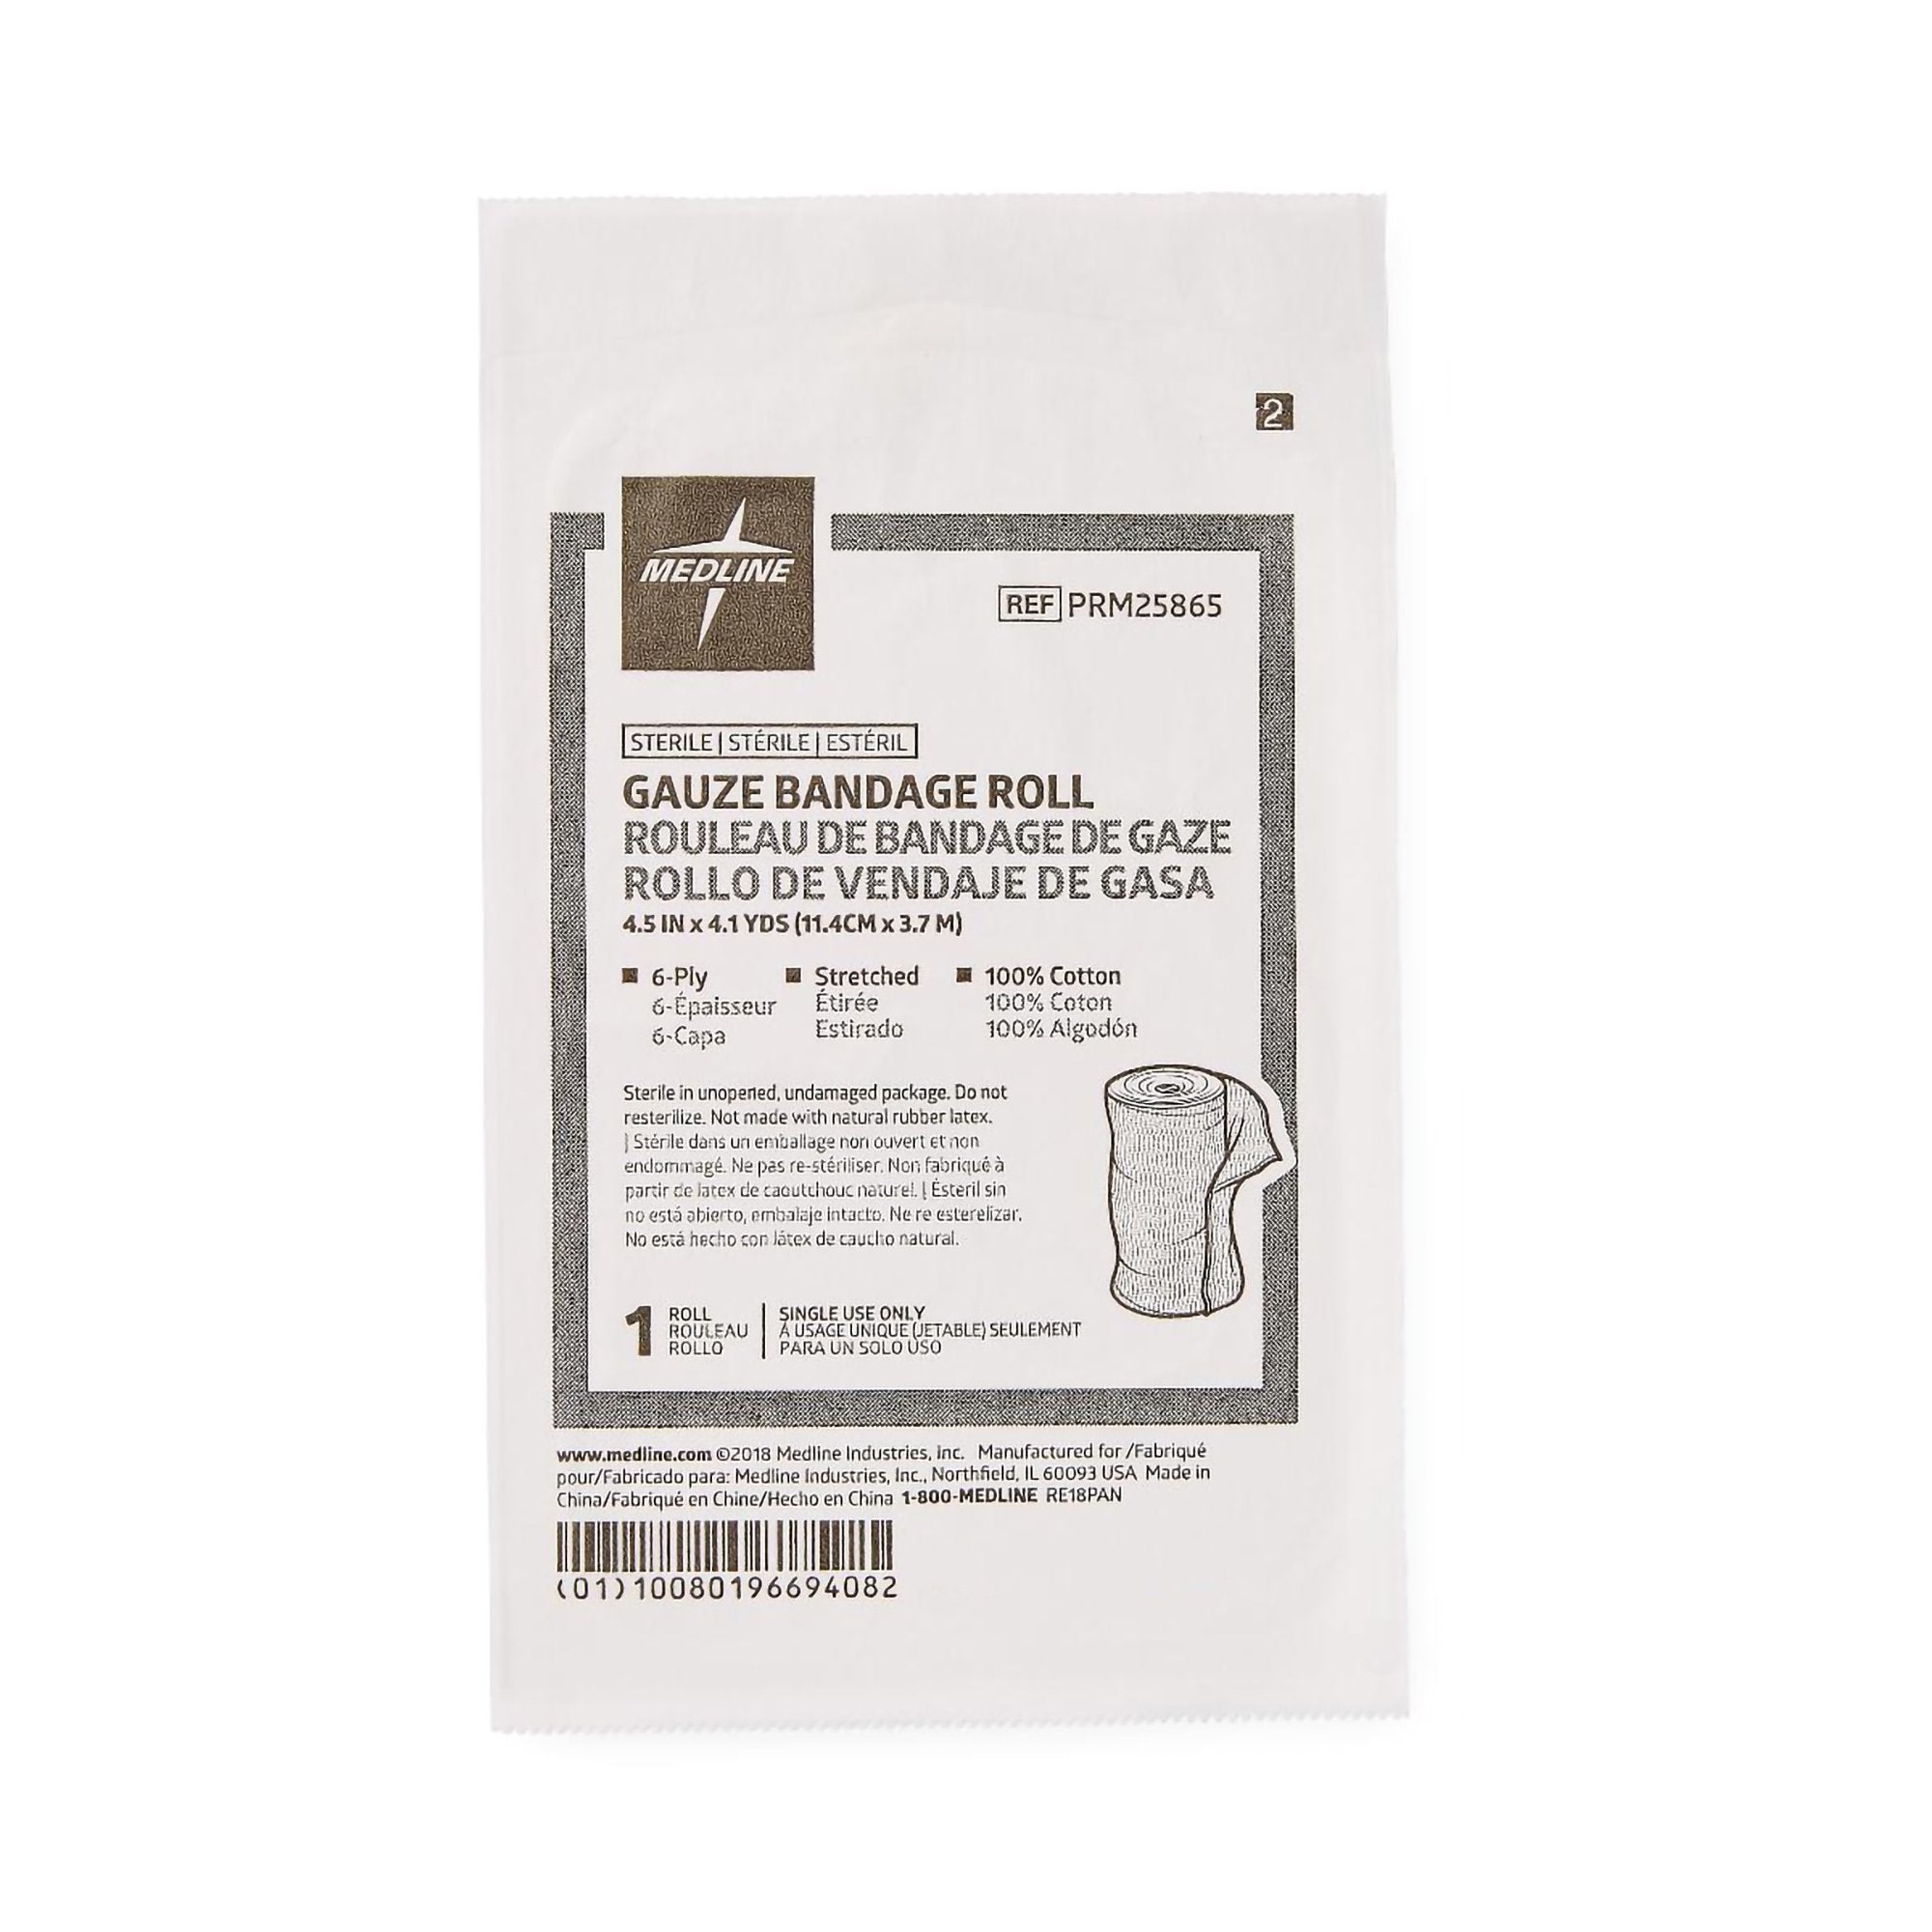 Caring® Sterile Fluff Bandage Roll, 4-1/2 Inch x 4-1/10 Yard